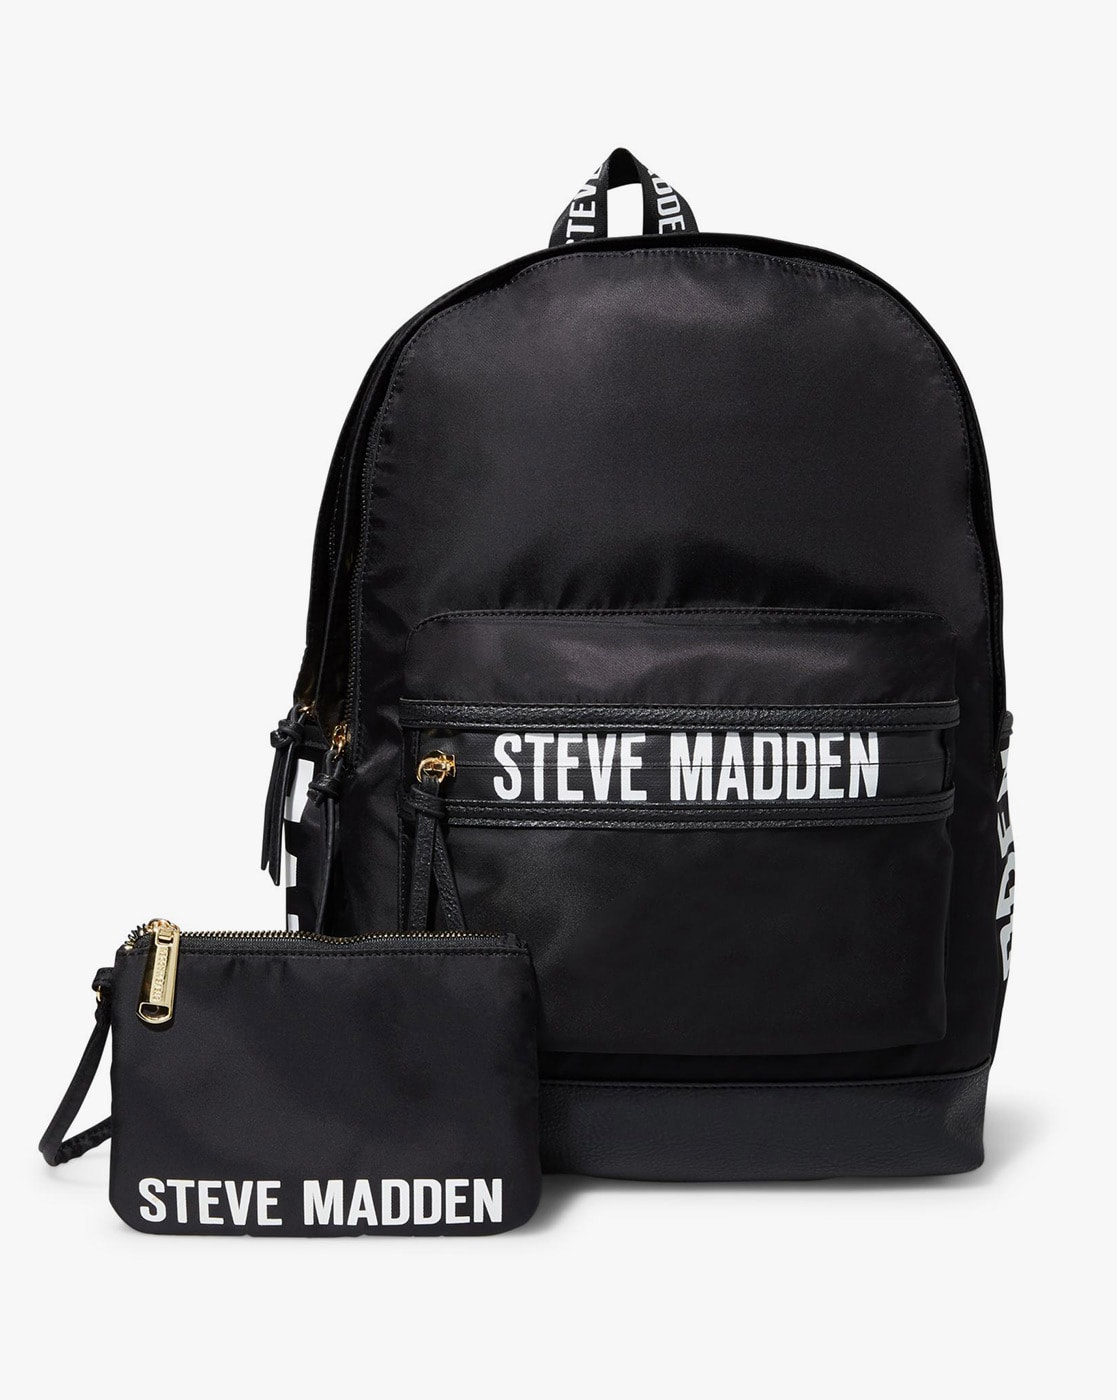 Buy Backpacks for STEVE MADDEN | Ajio.com